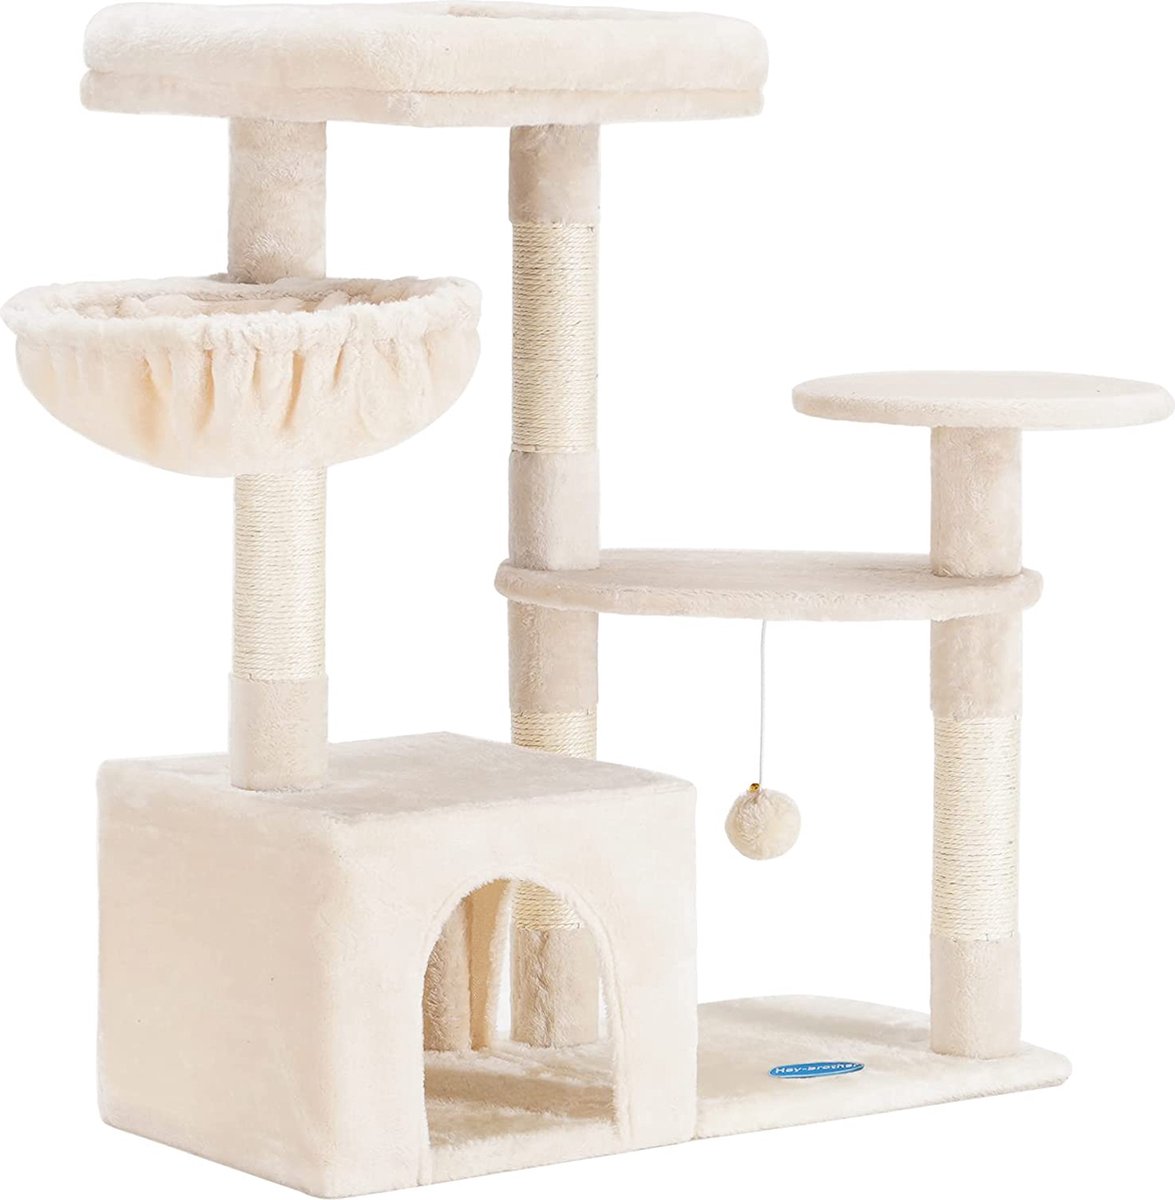 Krabpaal – katten krabpaal – katten speelgoed – cat tree – cat scratcher